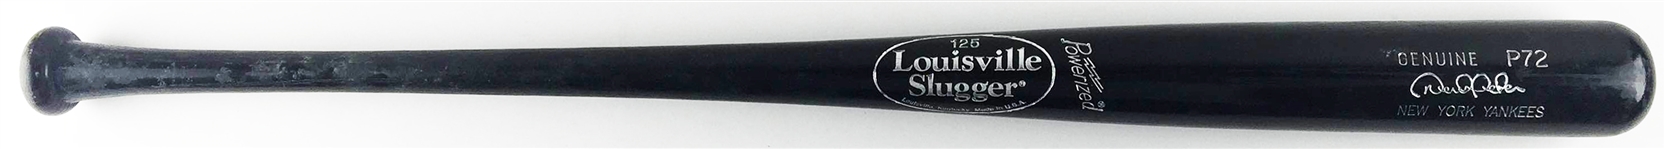 2007 Derek Jeter Game Used Personal P72 Model Baseball Bat (PSA/DNA Graded 8)